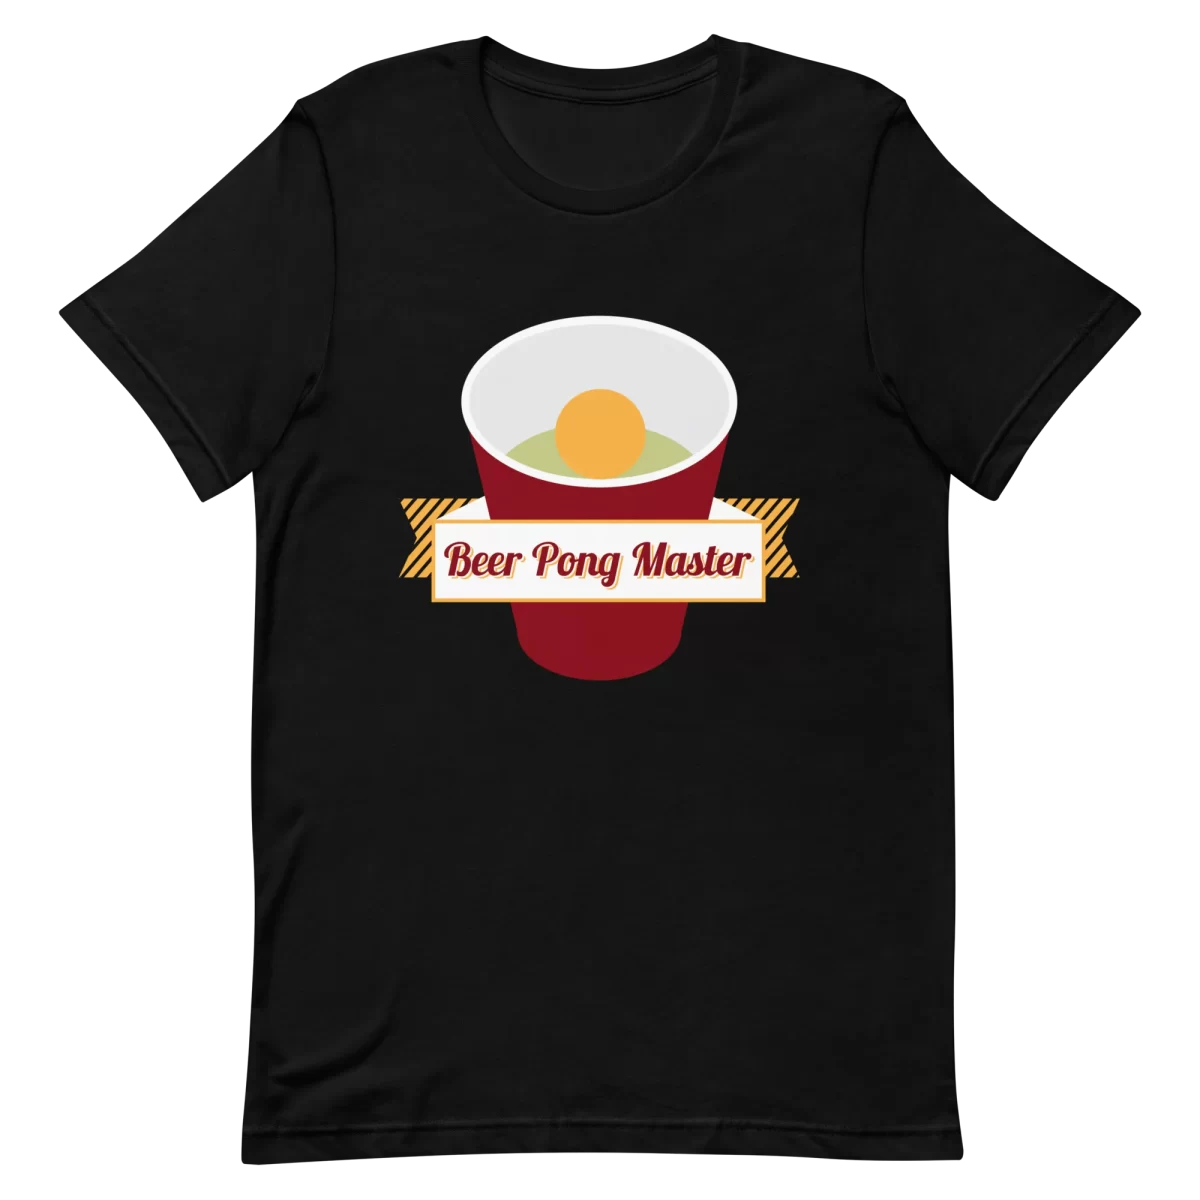 Unisex T-Shirt - Beer Pong Master - Black